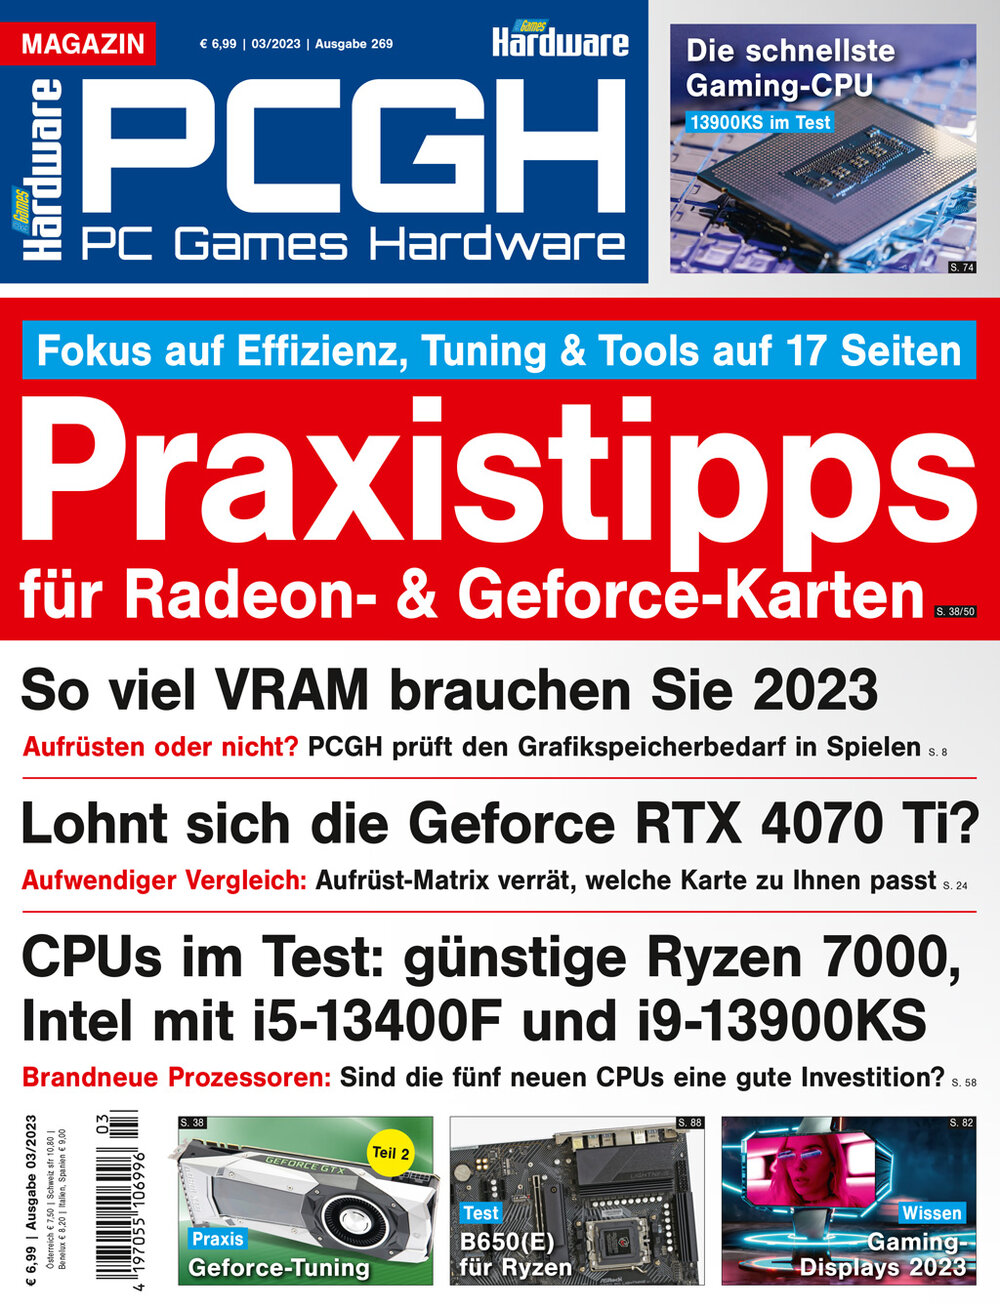 PCGH Magazin 03/2023